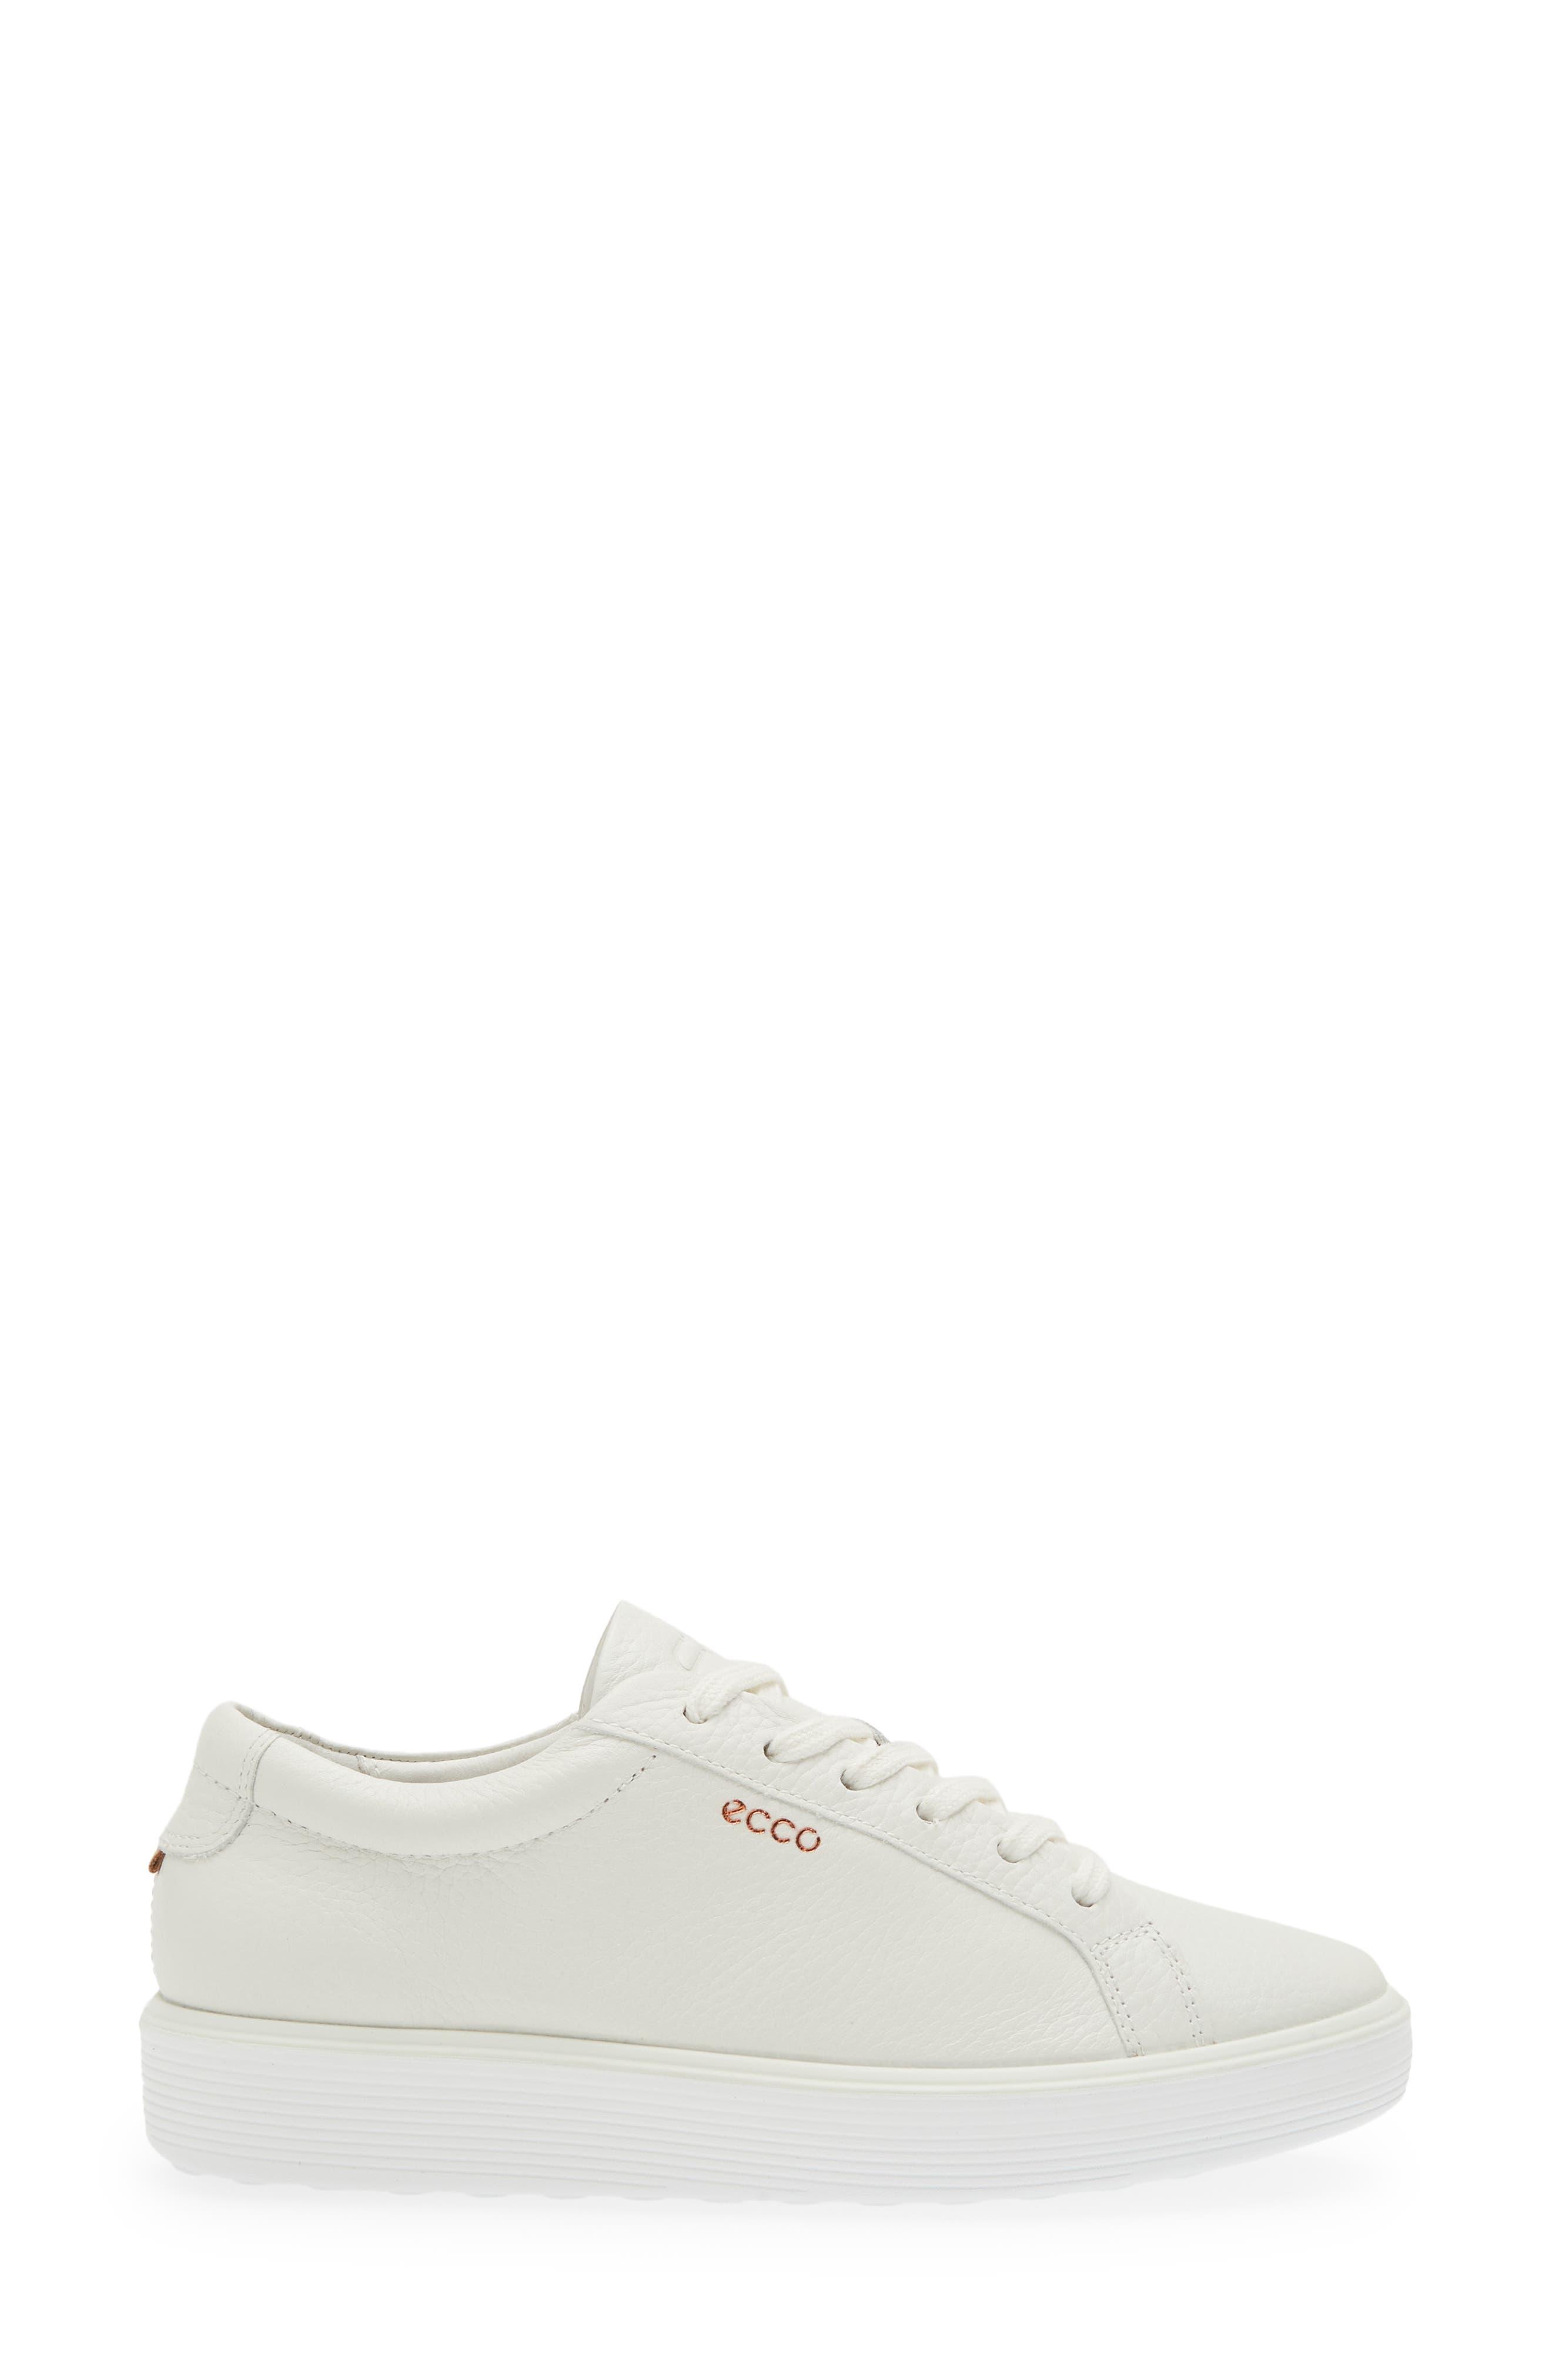 Ecco Soft 60 Aeon Sneaker in White | Lyst